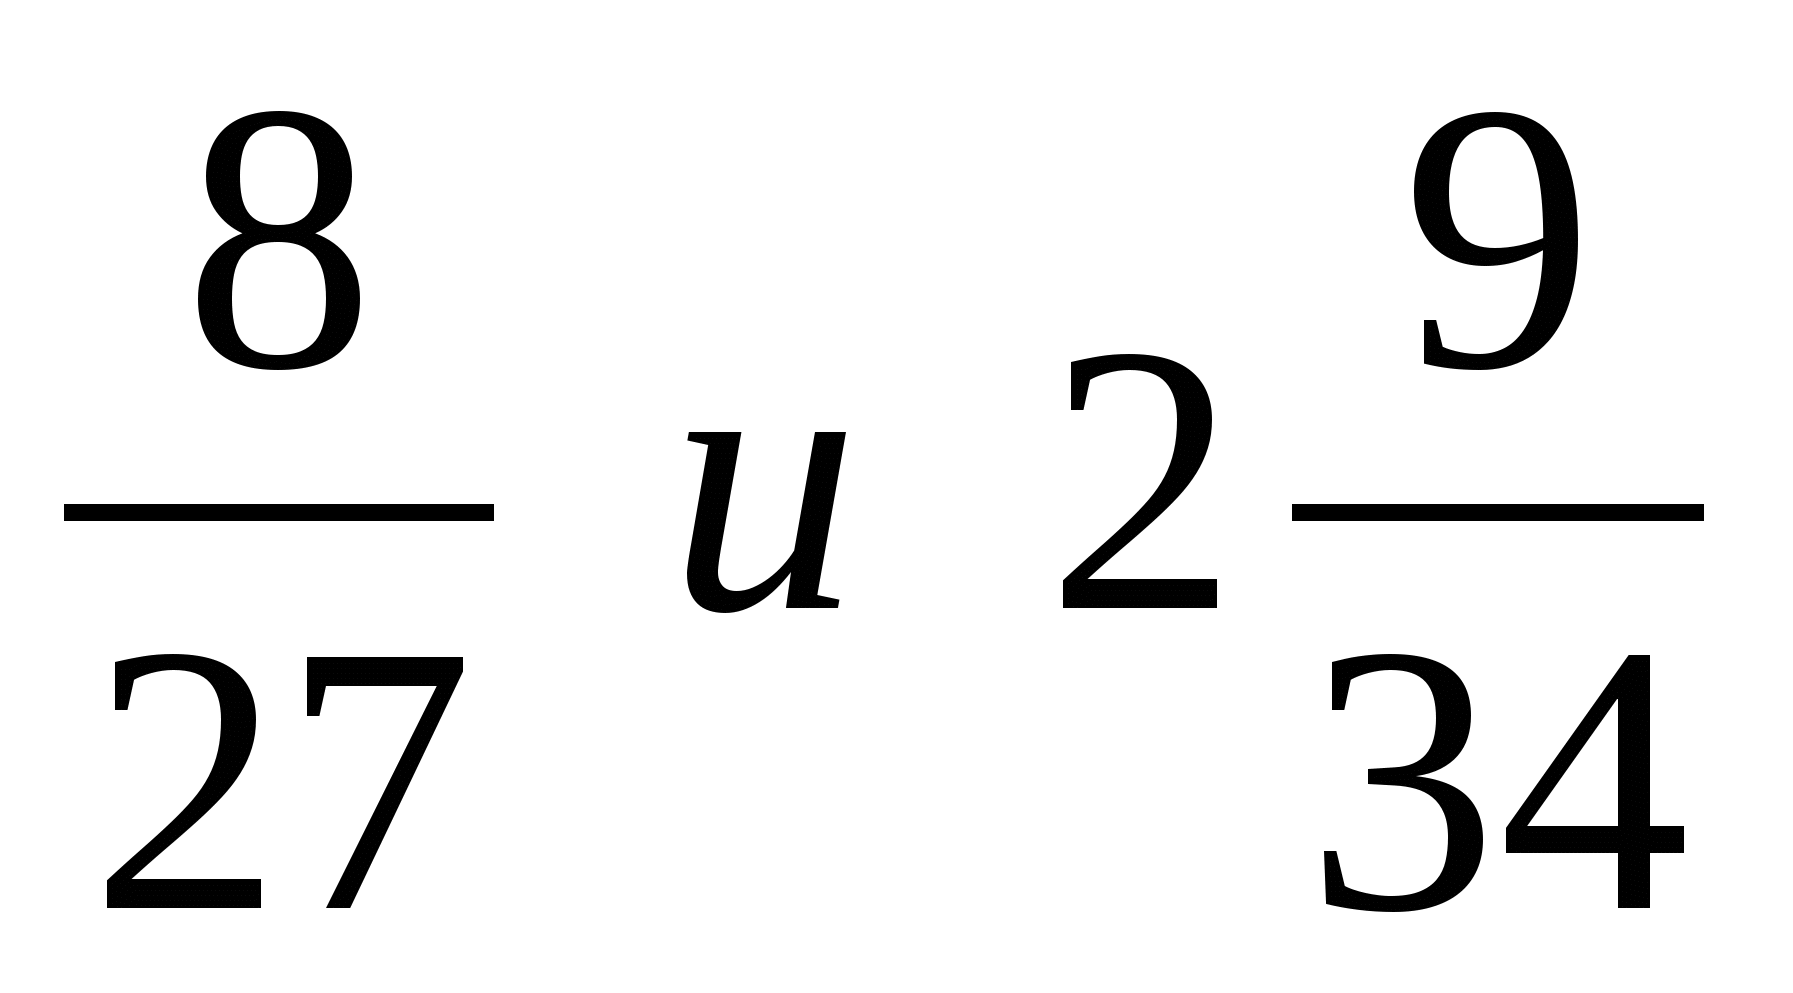 В сотых долях дроби 5 3. Выразите числа в виде приближенного значения. Выразите числа 9/37 и 1 3/28 в виде приближенного значения. Выразите числа 4/29 и 2 6/31 в виде приближенного значения.